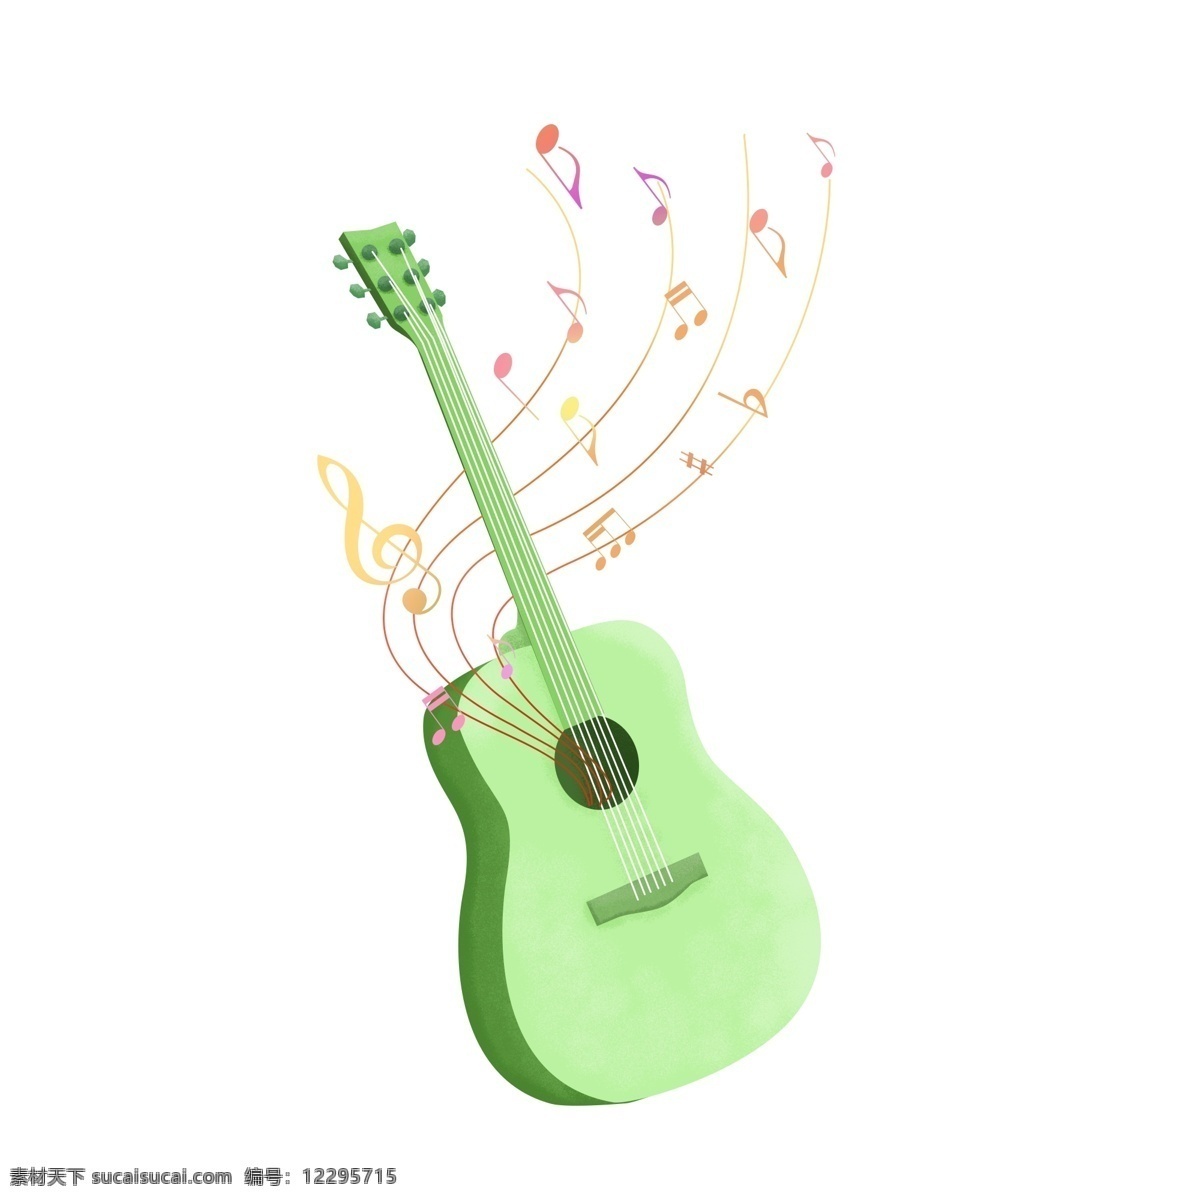 手绘 渐变 漂浮 音符 环绕 乐器 绿色 吉他 装饰 图案 手绘乐器 手绘吉他 漂浮音符 渐变音符 音符元素 吉他元素